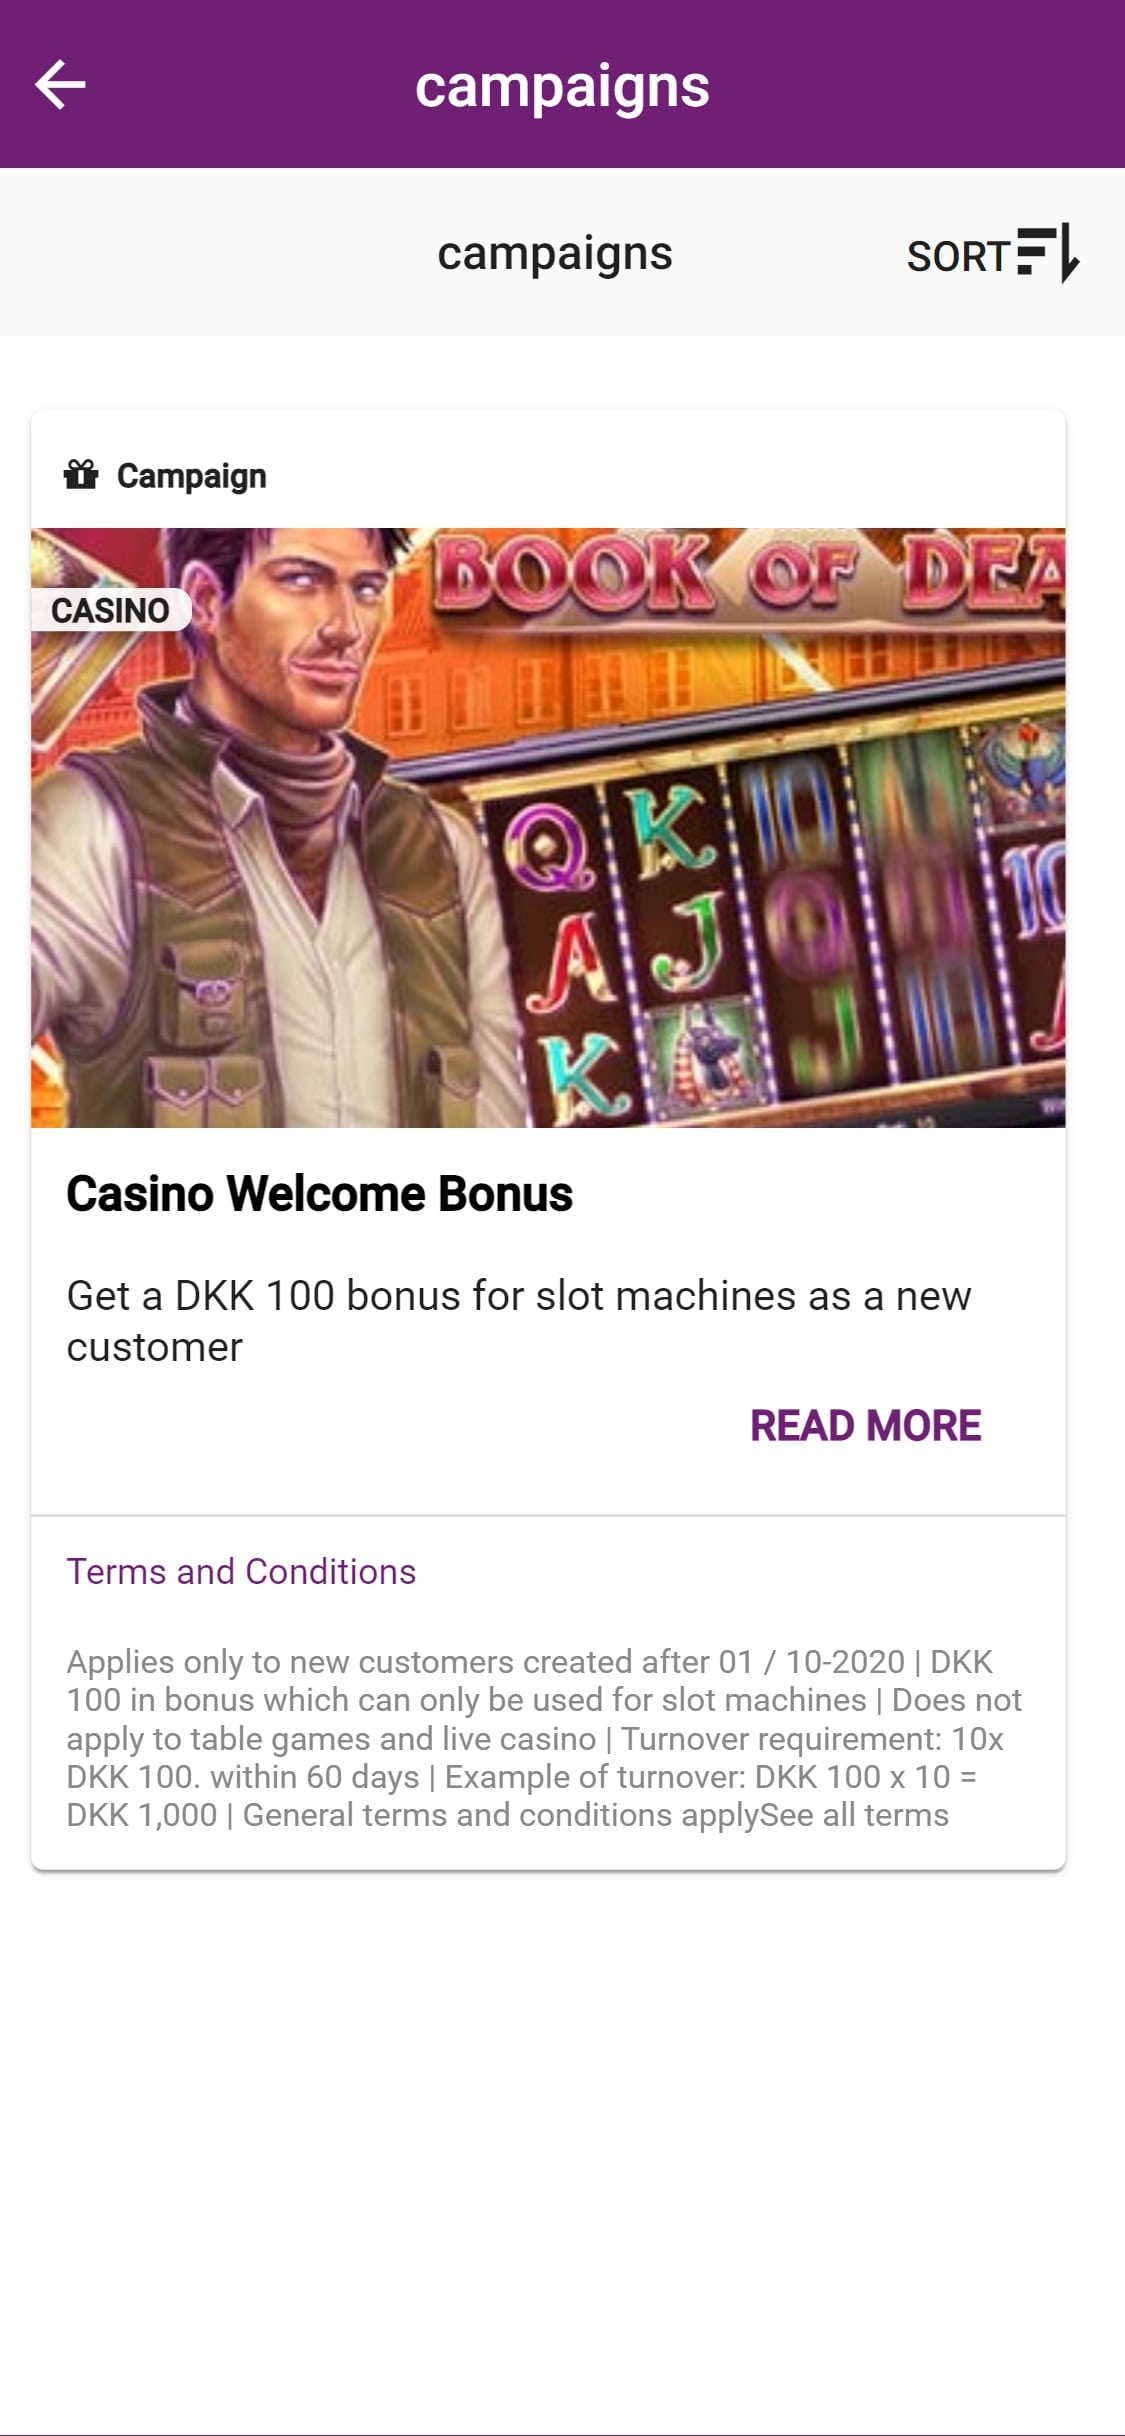 Casino DK Mobile No Deposit Bonus Review